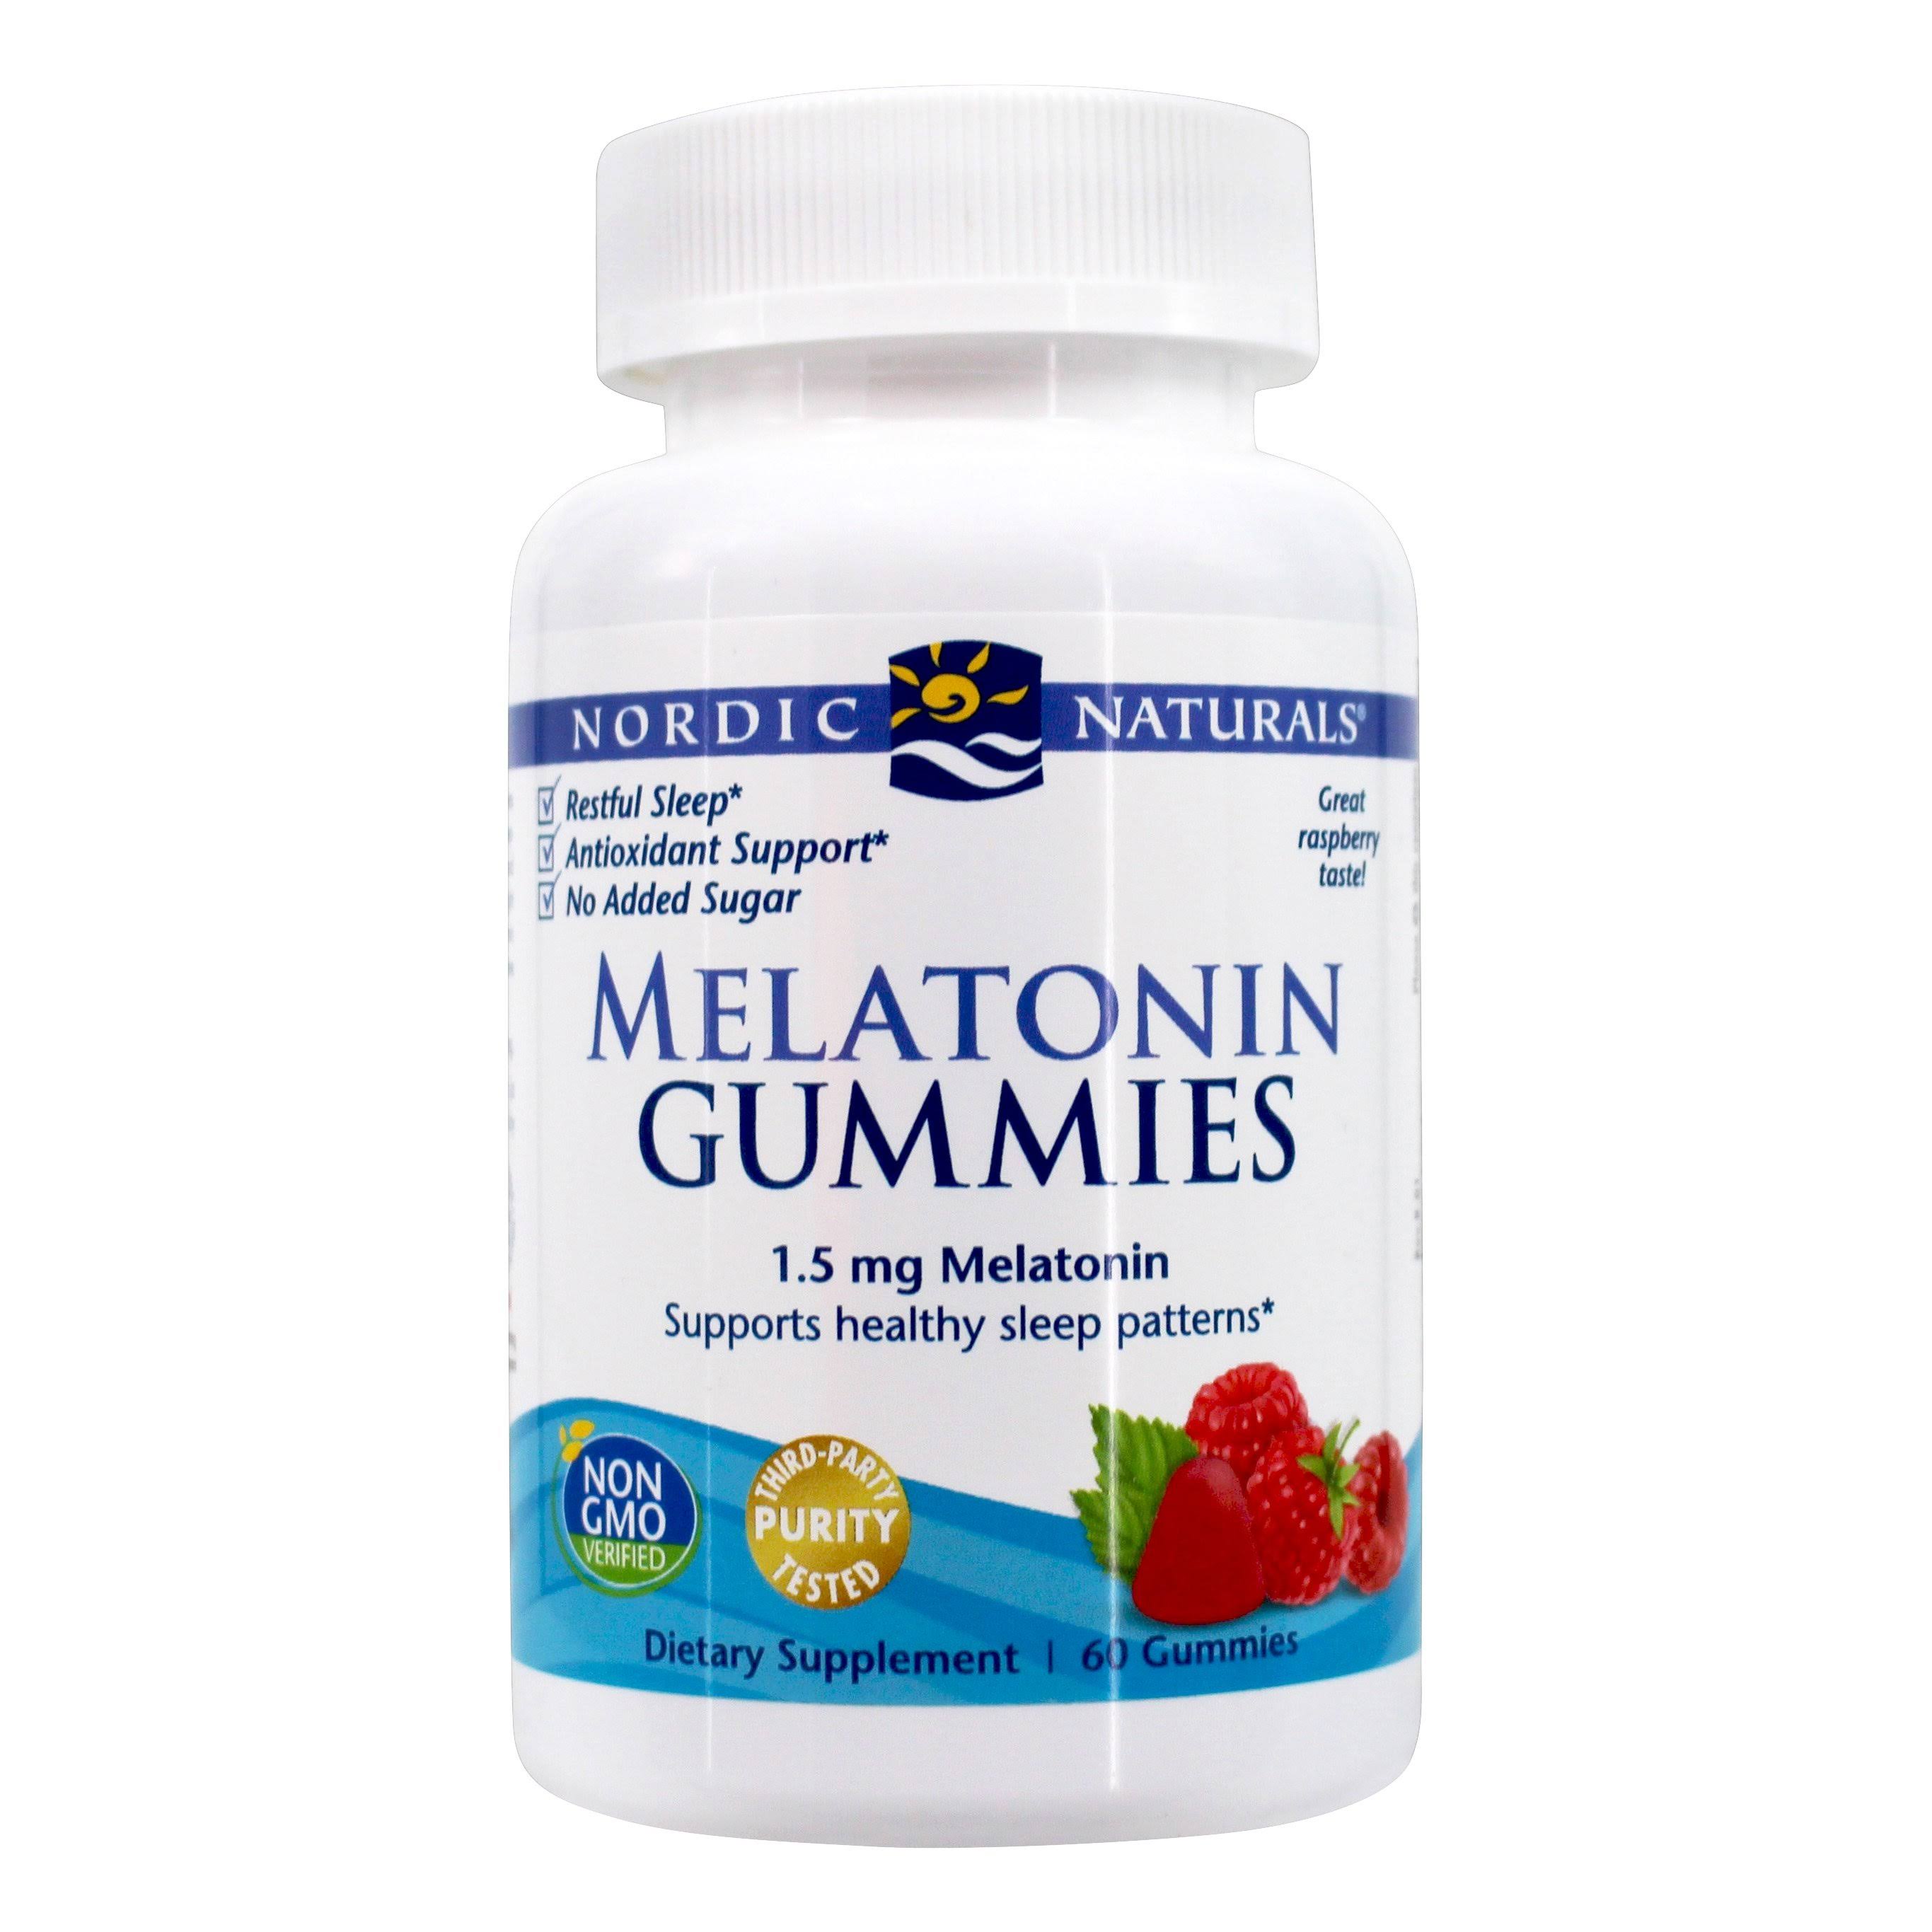 Nordic Naturals Melatonin Gummies Dietary Supplement - Raspberry Flavor, 60ct